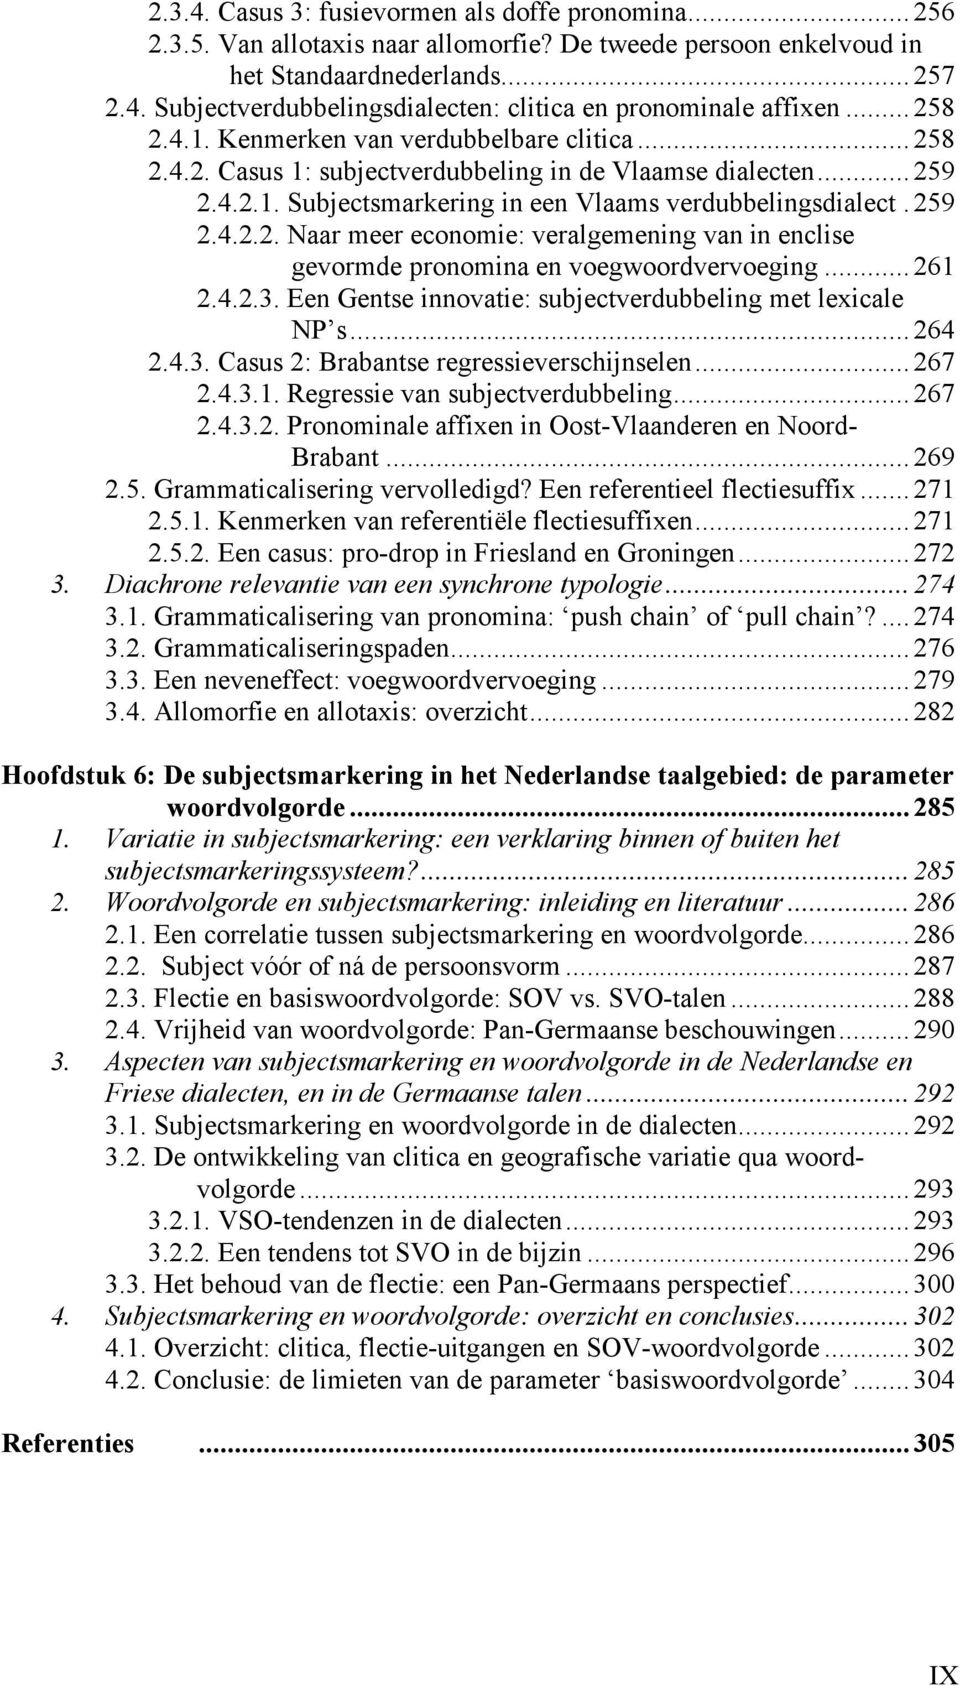 .. 261 2.4.2.3. Een Gentse innovatie: subjectverdubbeling met lexicale NP s... 264 2.4.3. Casus 2: Brabantse regressieverschijnselen... 267 2.4.3.1. Regressie van subjectverdubbeling... 267 2.4.3.2. Pronominale affixen in Oost-Vlaanderen en Noord- Brabant.